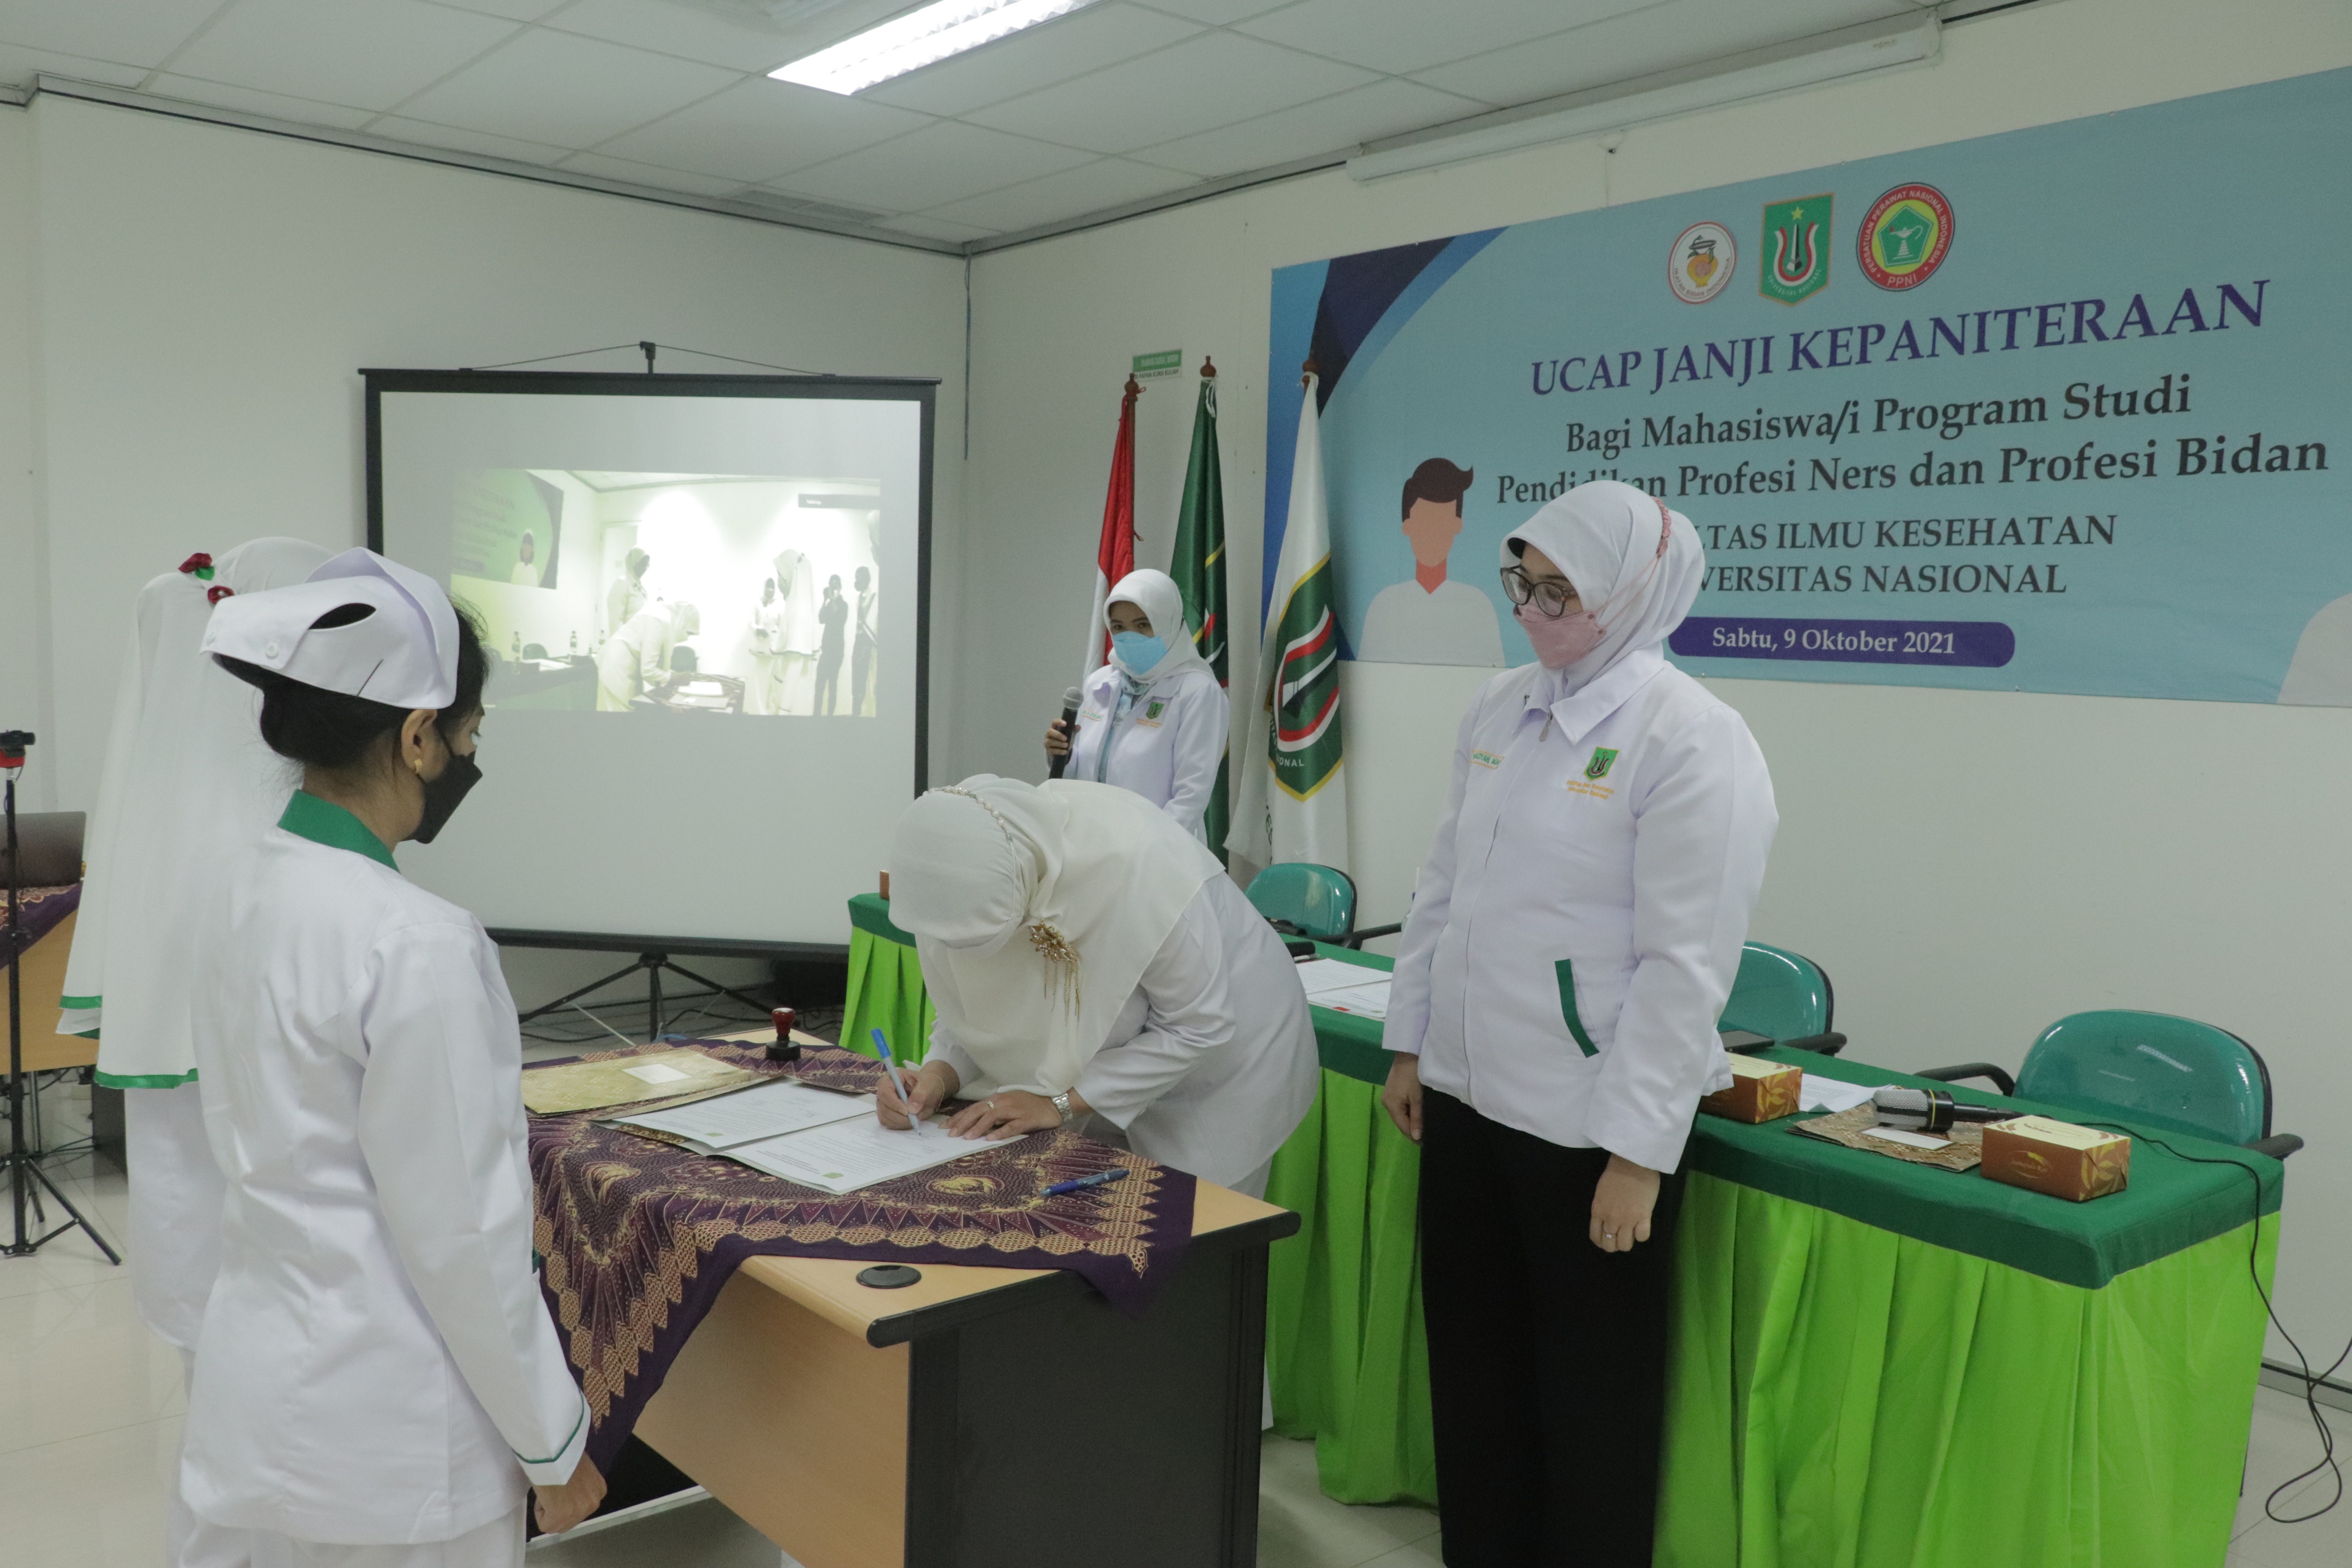 Penandatanganan naskah ucap janji yang disetujui oleh Dekan Fakultas Ilmu Kesehatan Universitas Nasional Dr. Retno Widowati, M.Si.